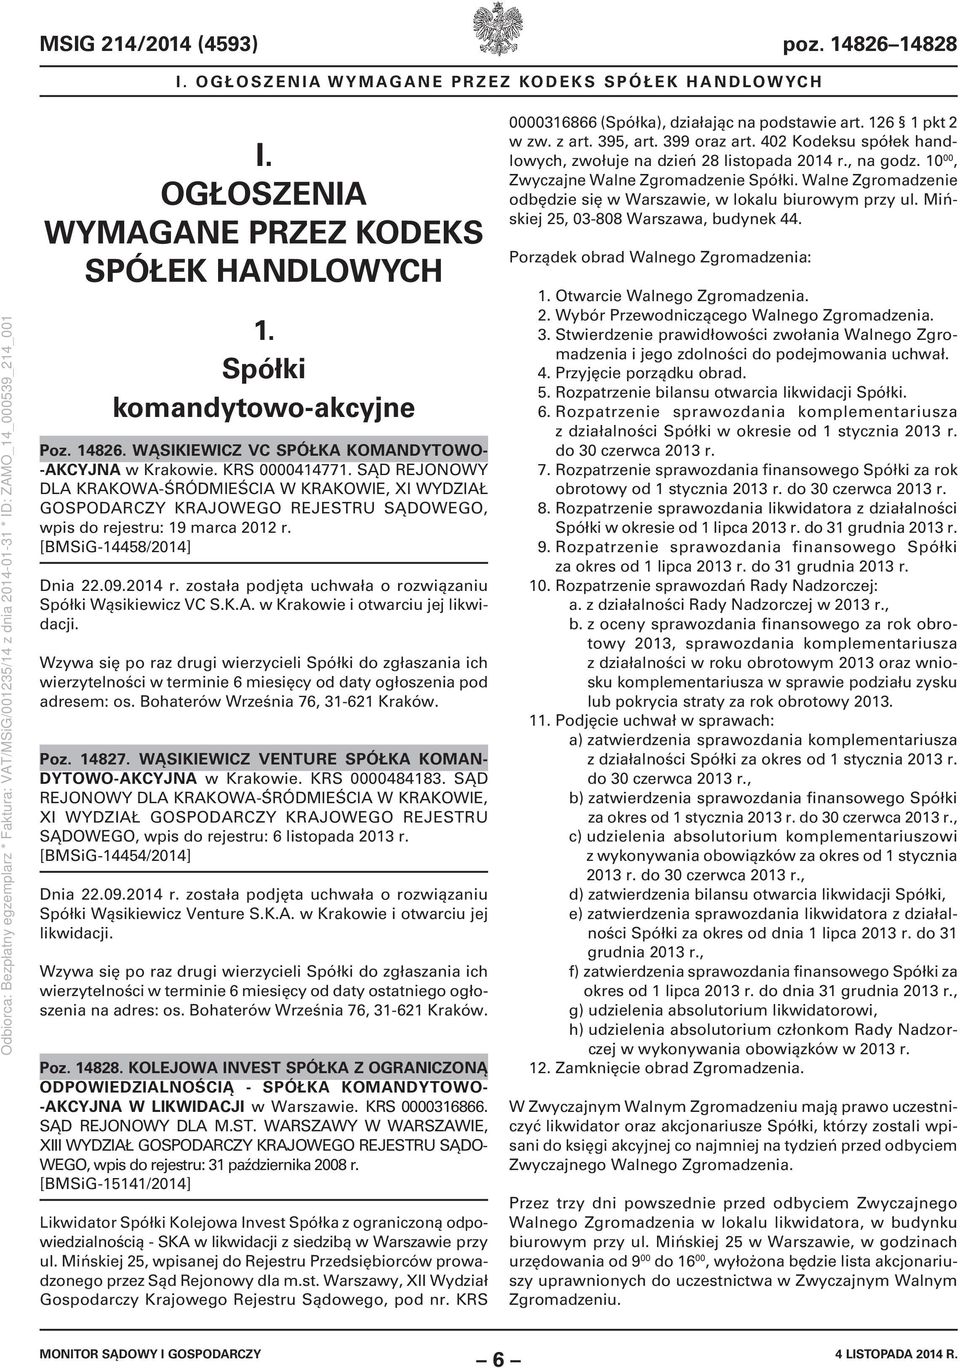 została podjęta uchwała o rozwiązaniu Spółki Wąsikiewicz VC S.K.A. w Krakowie i otwarciu jej likwidacji.